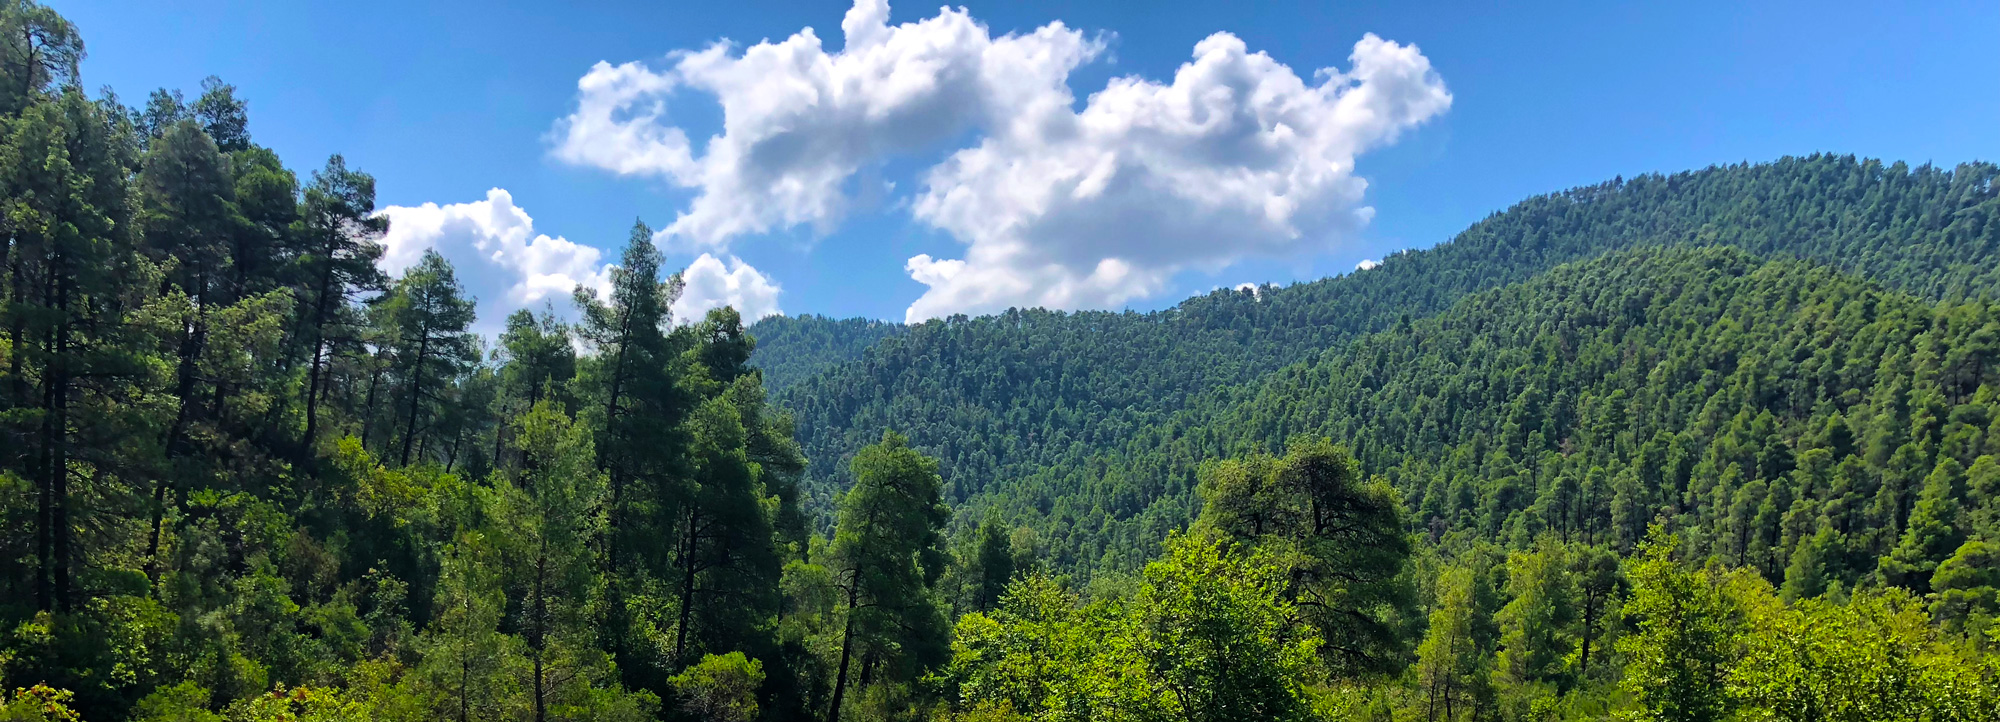 Evia nature, sky and green mountain